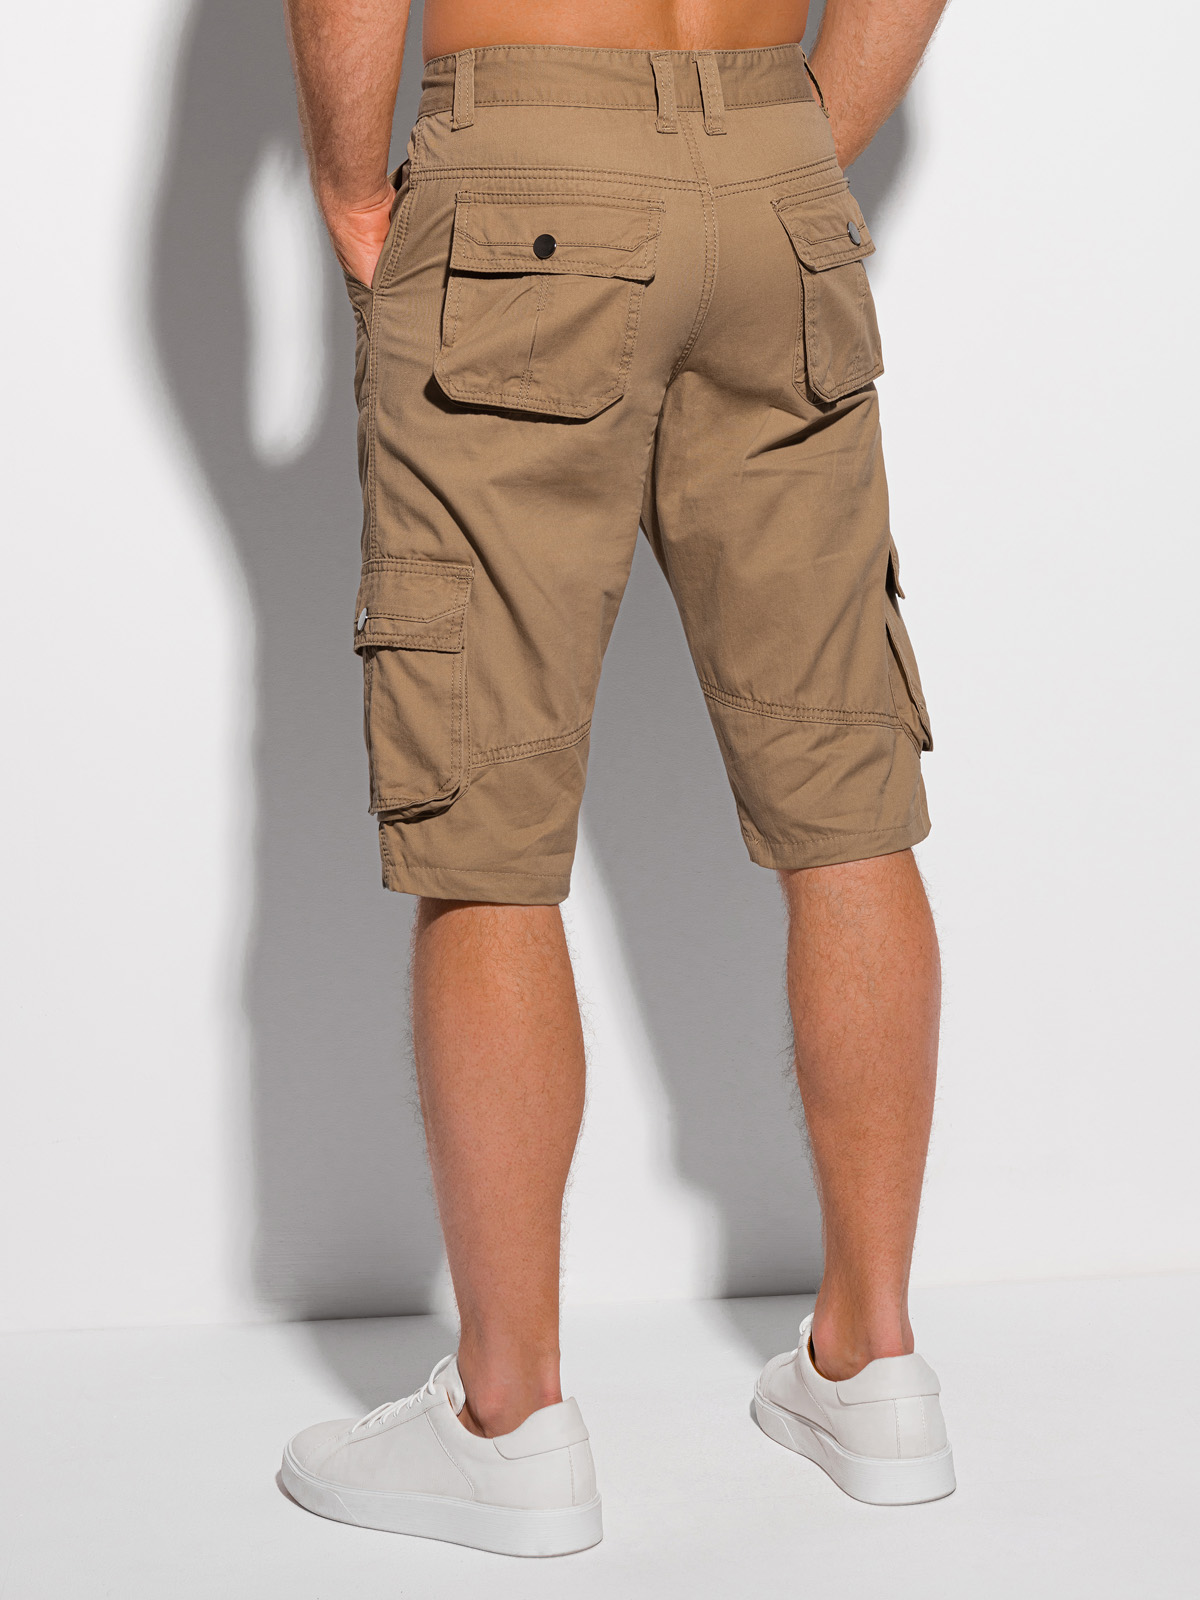 Vertrek naar tussen Toepassing Men's cargo shorts W373 - camel | MODONE wholesale - Clothing For Men